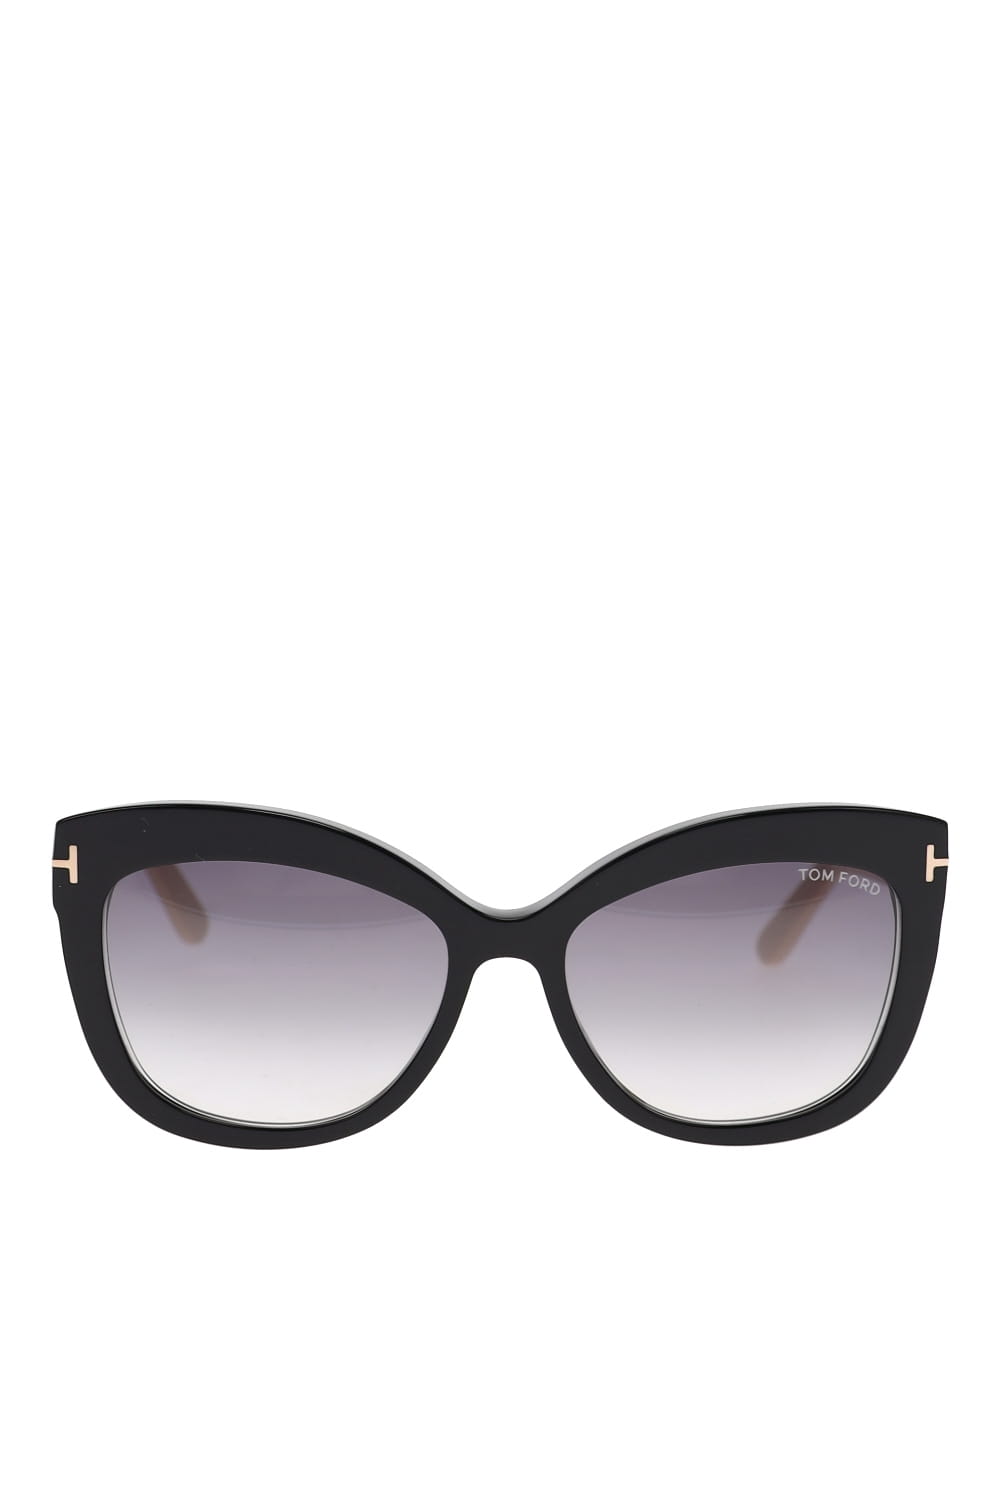 Tom Ford Eyewear FT0524 Shiny Ivory Sunglasses FT0524 Ivory/Smoke